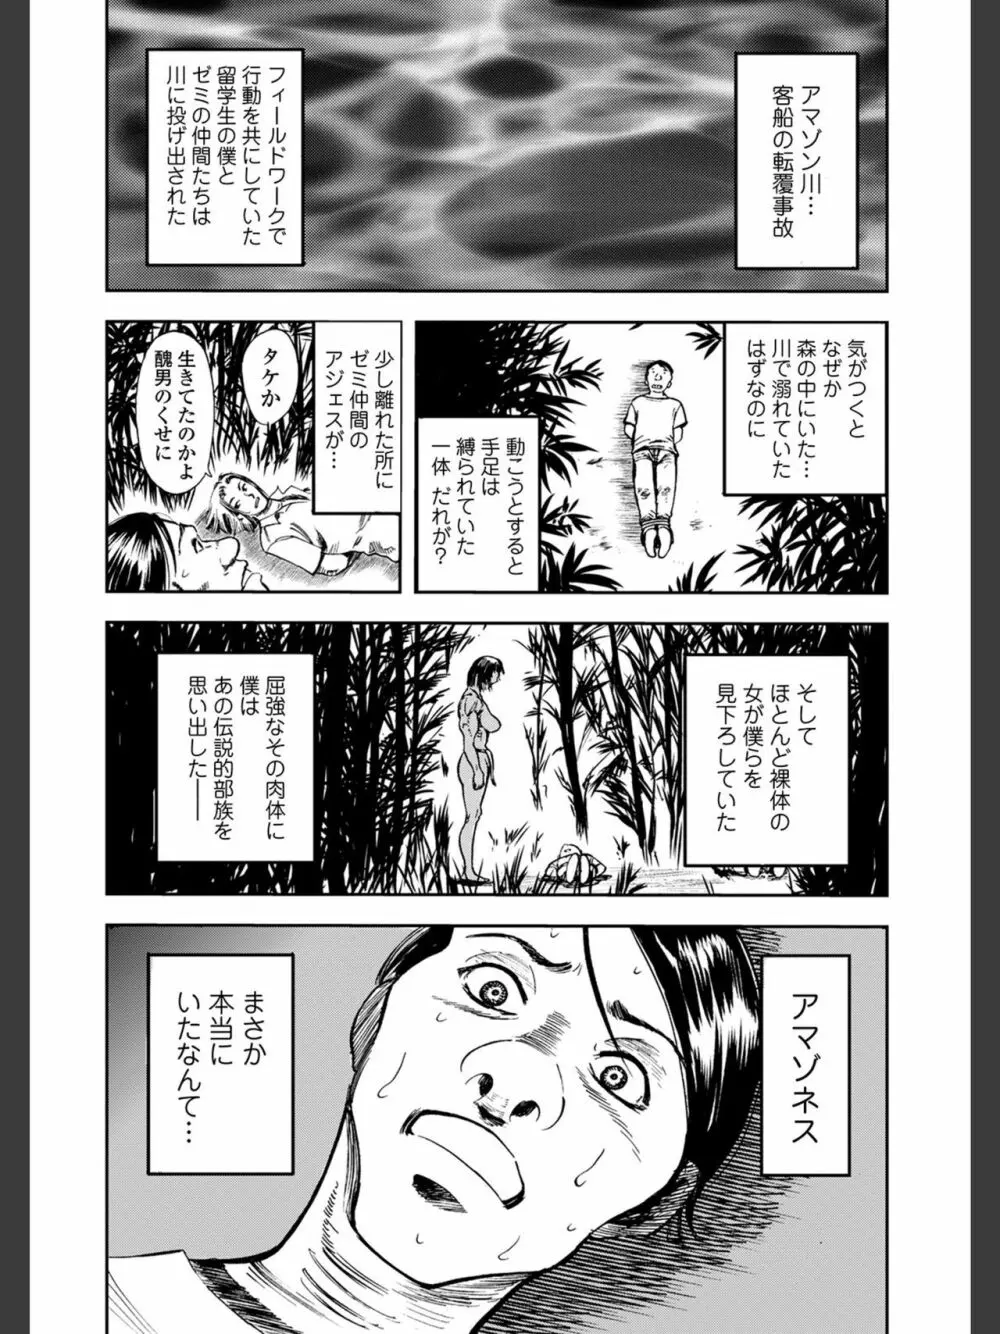 [山田タヒチ]人妻通販 -売られた女- 【FANZA特別版】 179ページ